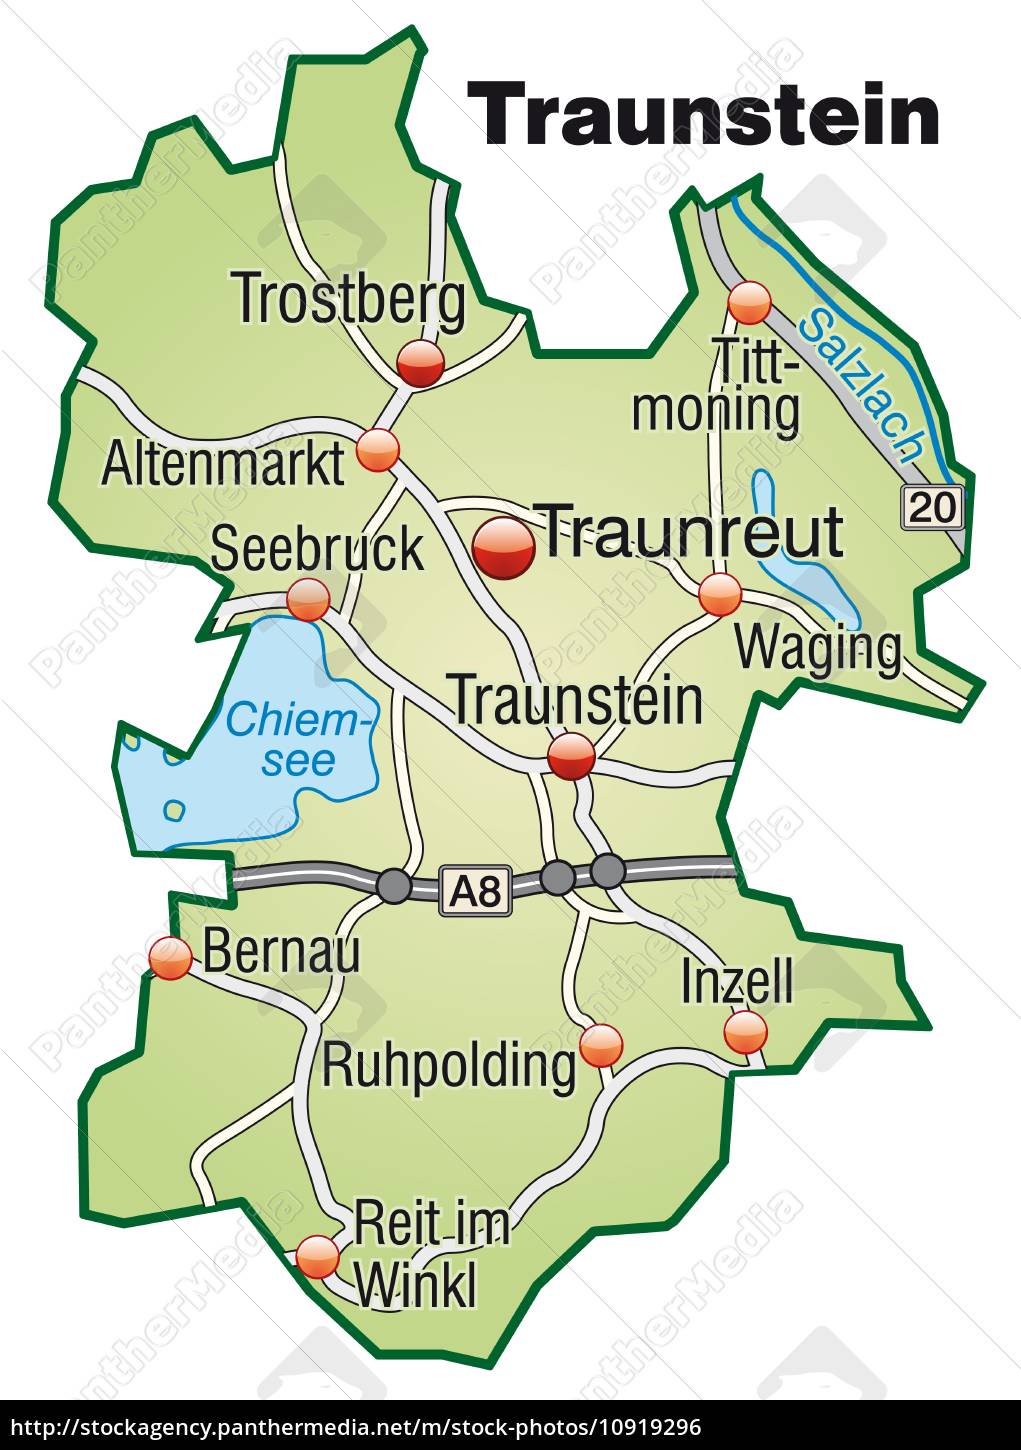 Karte von Traunstein mit Verkehrsnetz in Pastellgrün - Lizenzfreies